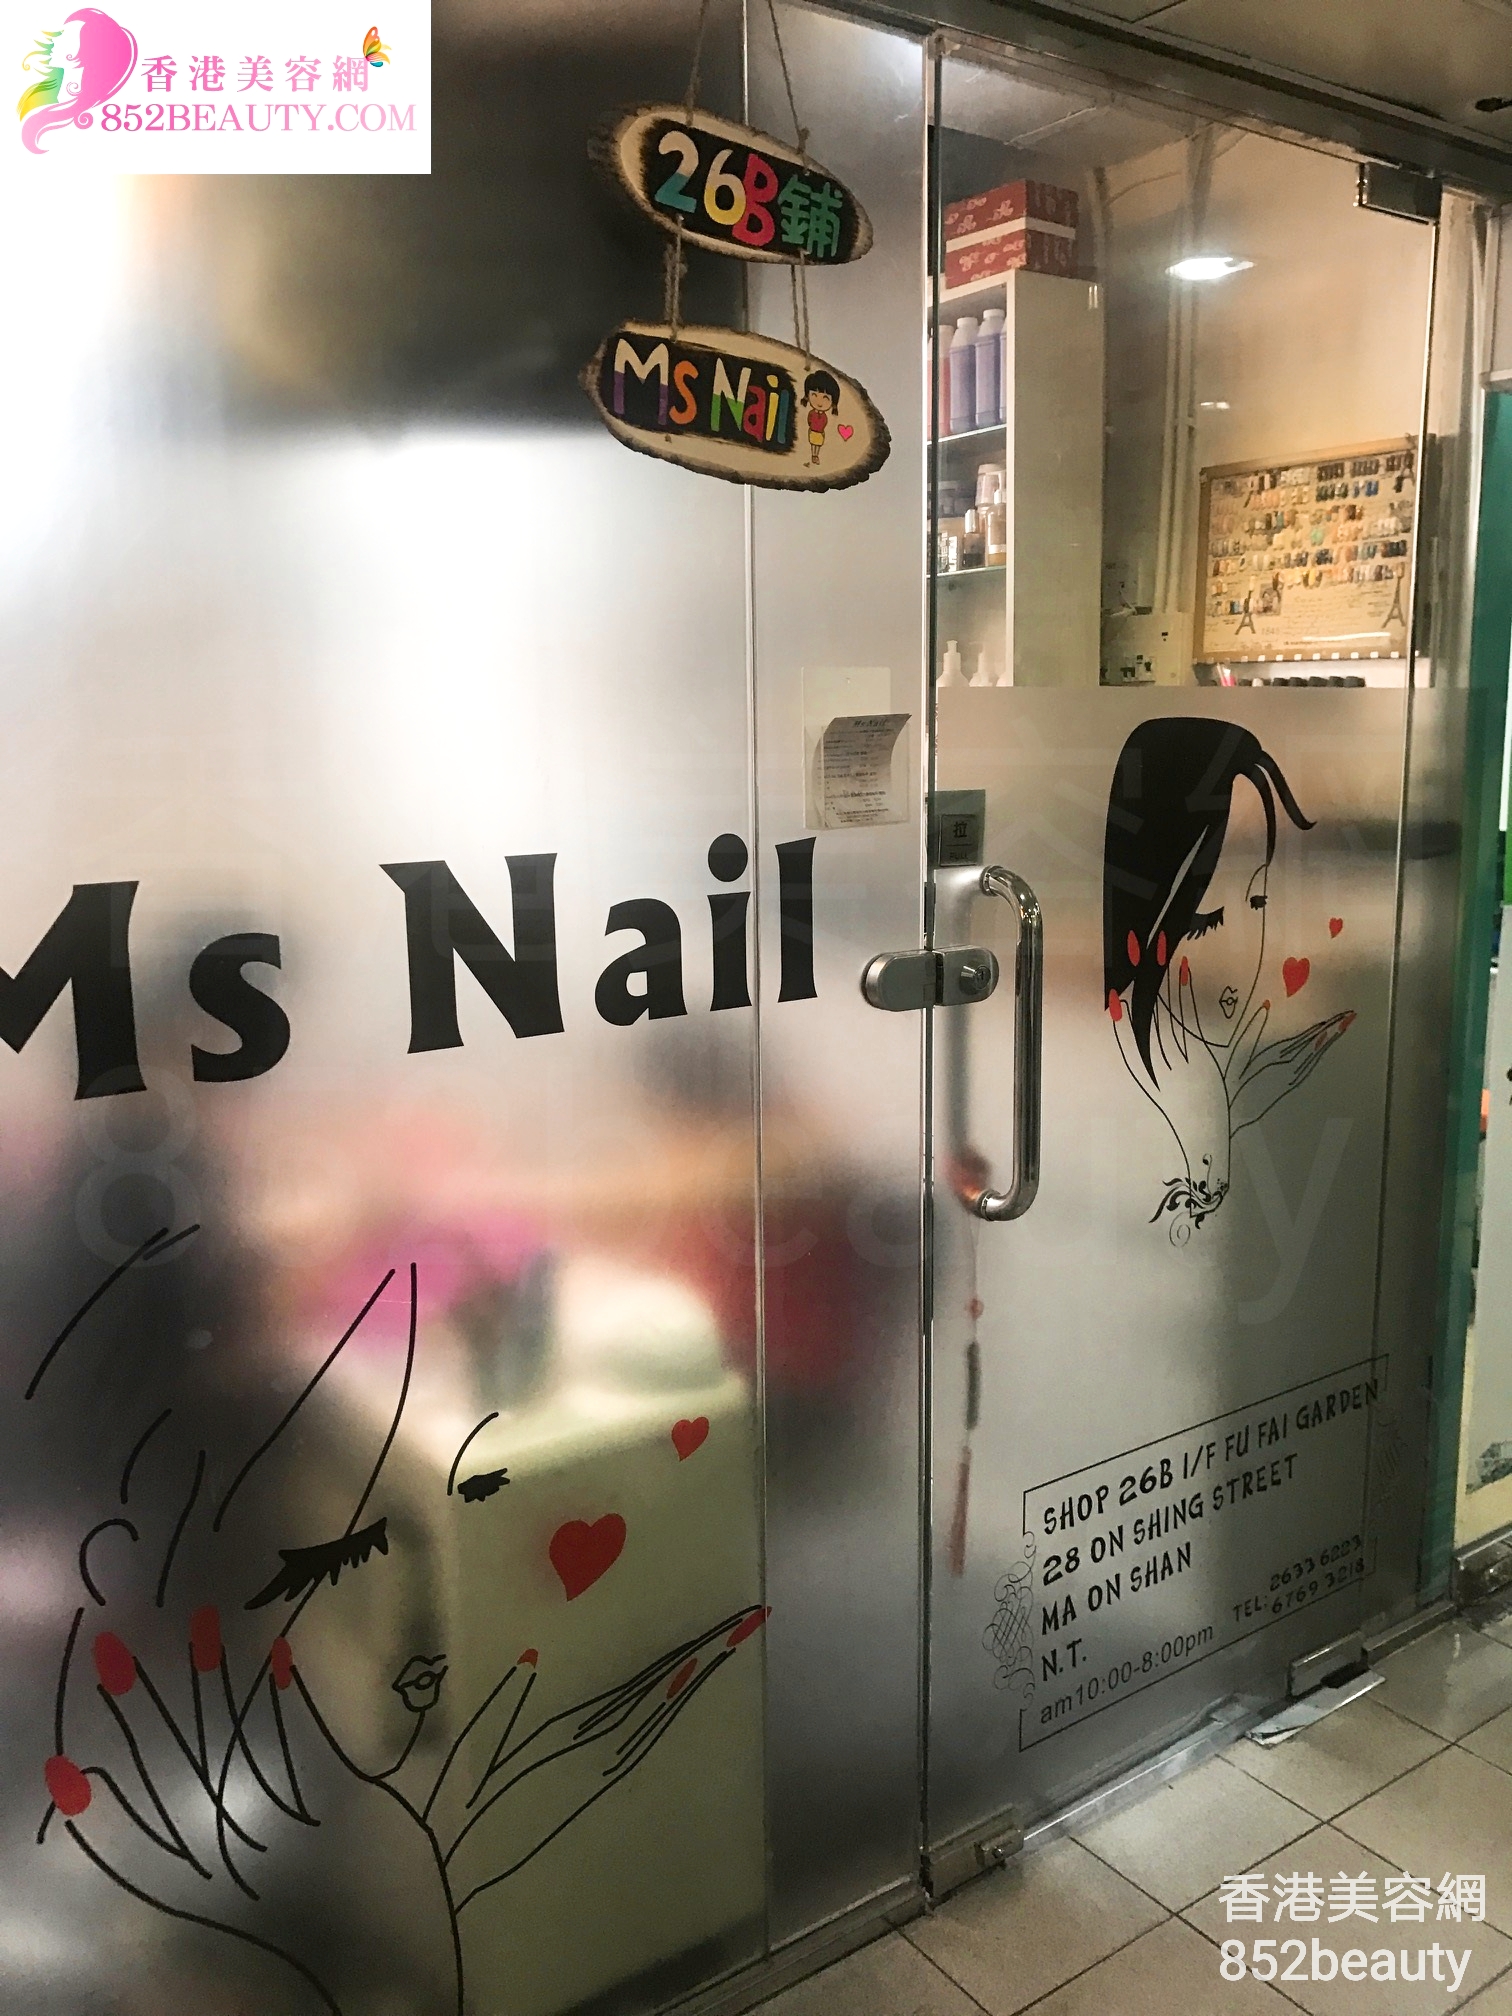 香港美容網 Hong Kong Beauty Salon 美容院 / 美容師: Ms Nail